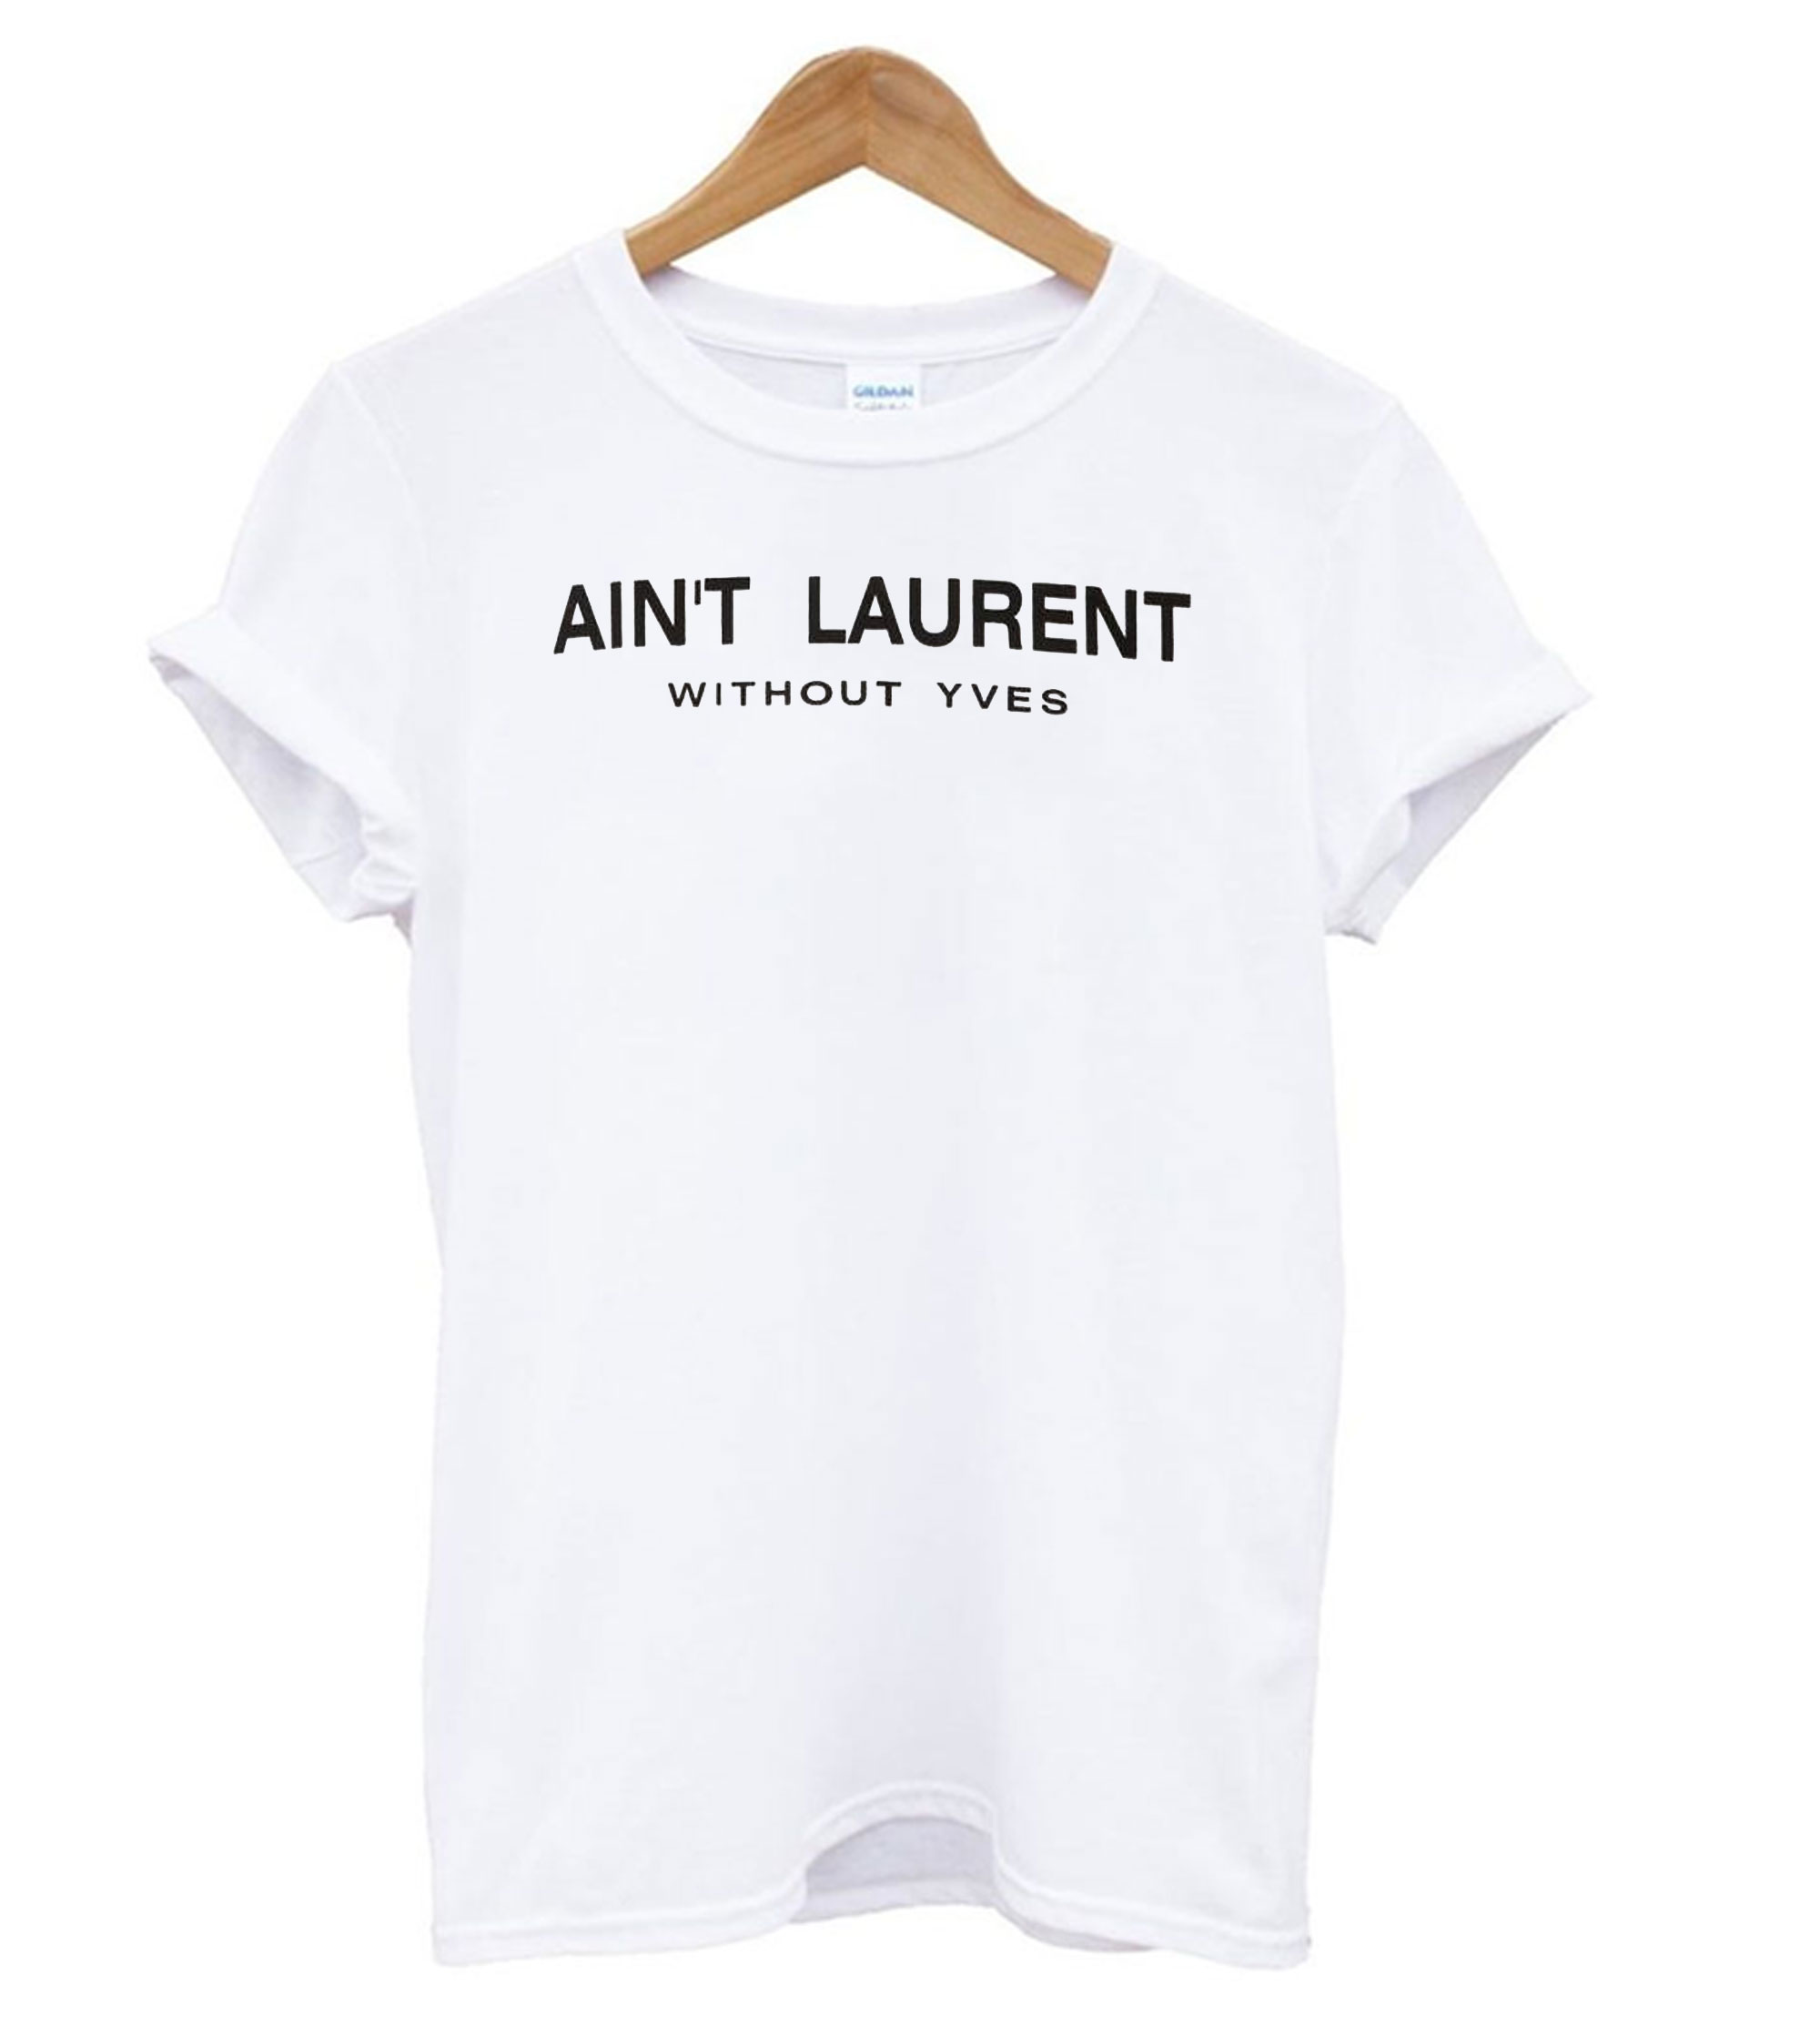 Ain't Laurent Yves White T shirt